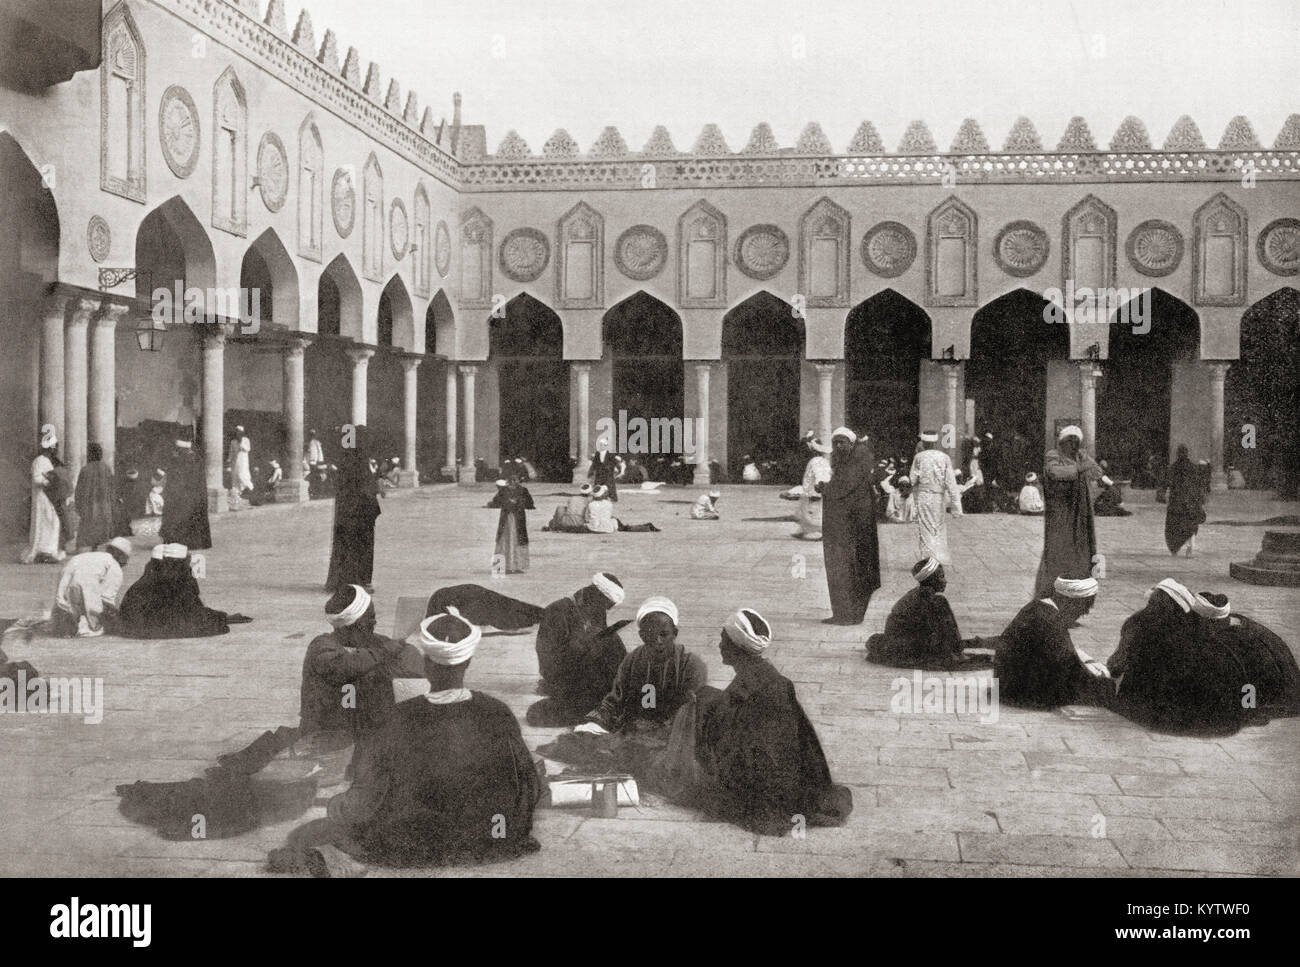 La cour ouverte de la mosquée Al-Azhar, l'Université du Caire, Egypte, vu ici en 1880. Des merveilles du monde, publié vers 1920. Banque D'Images